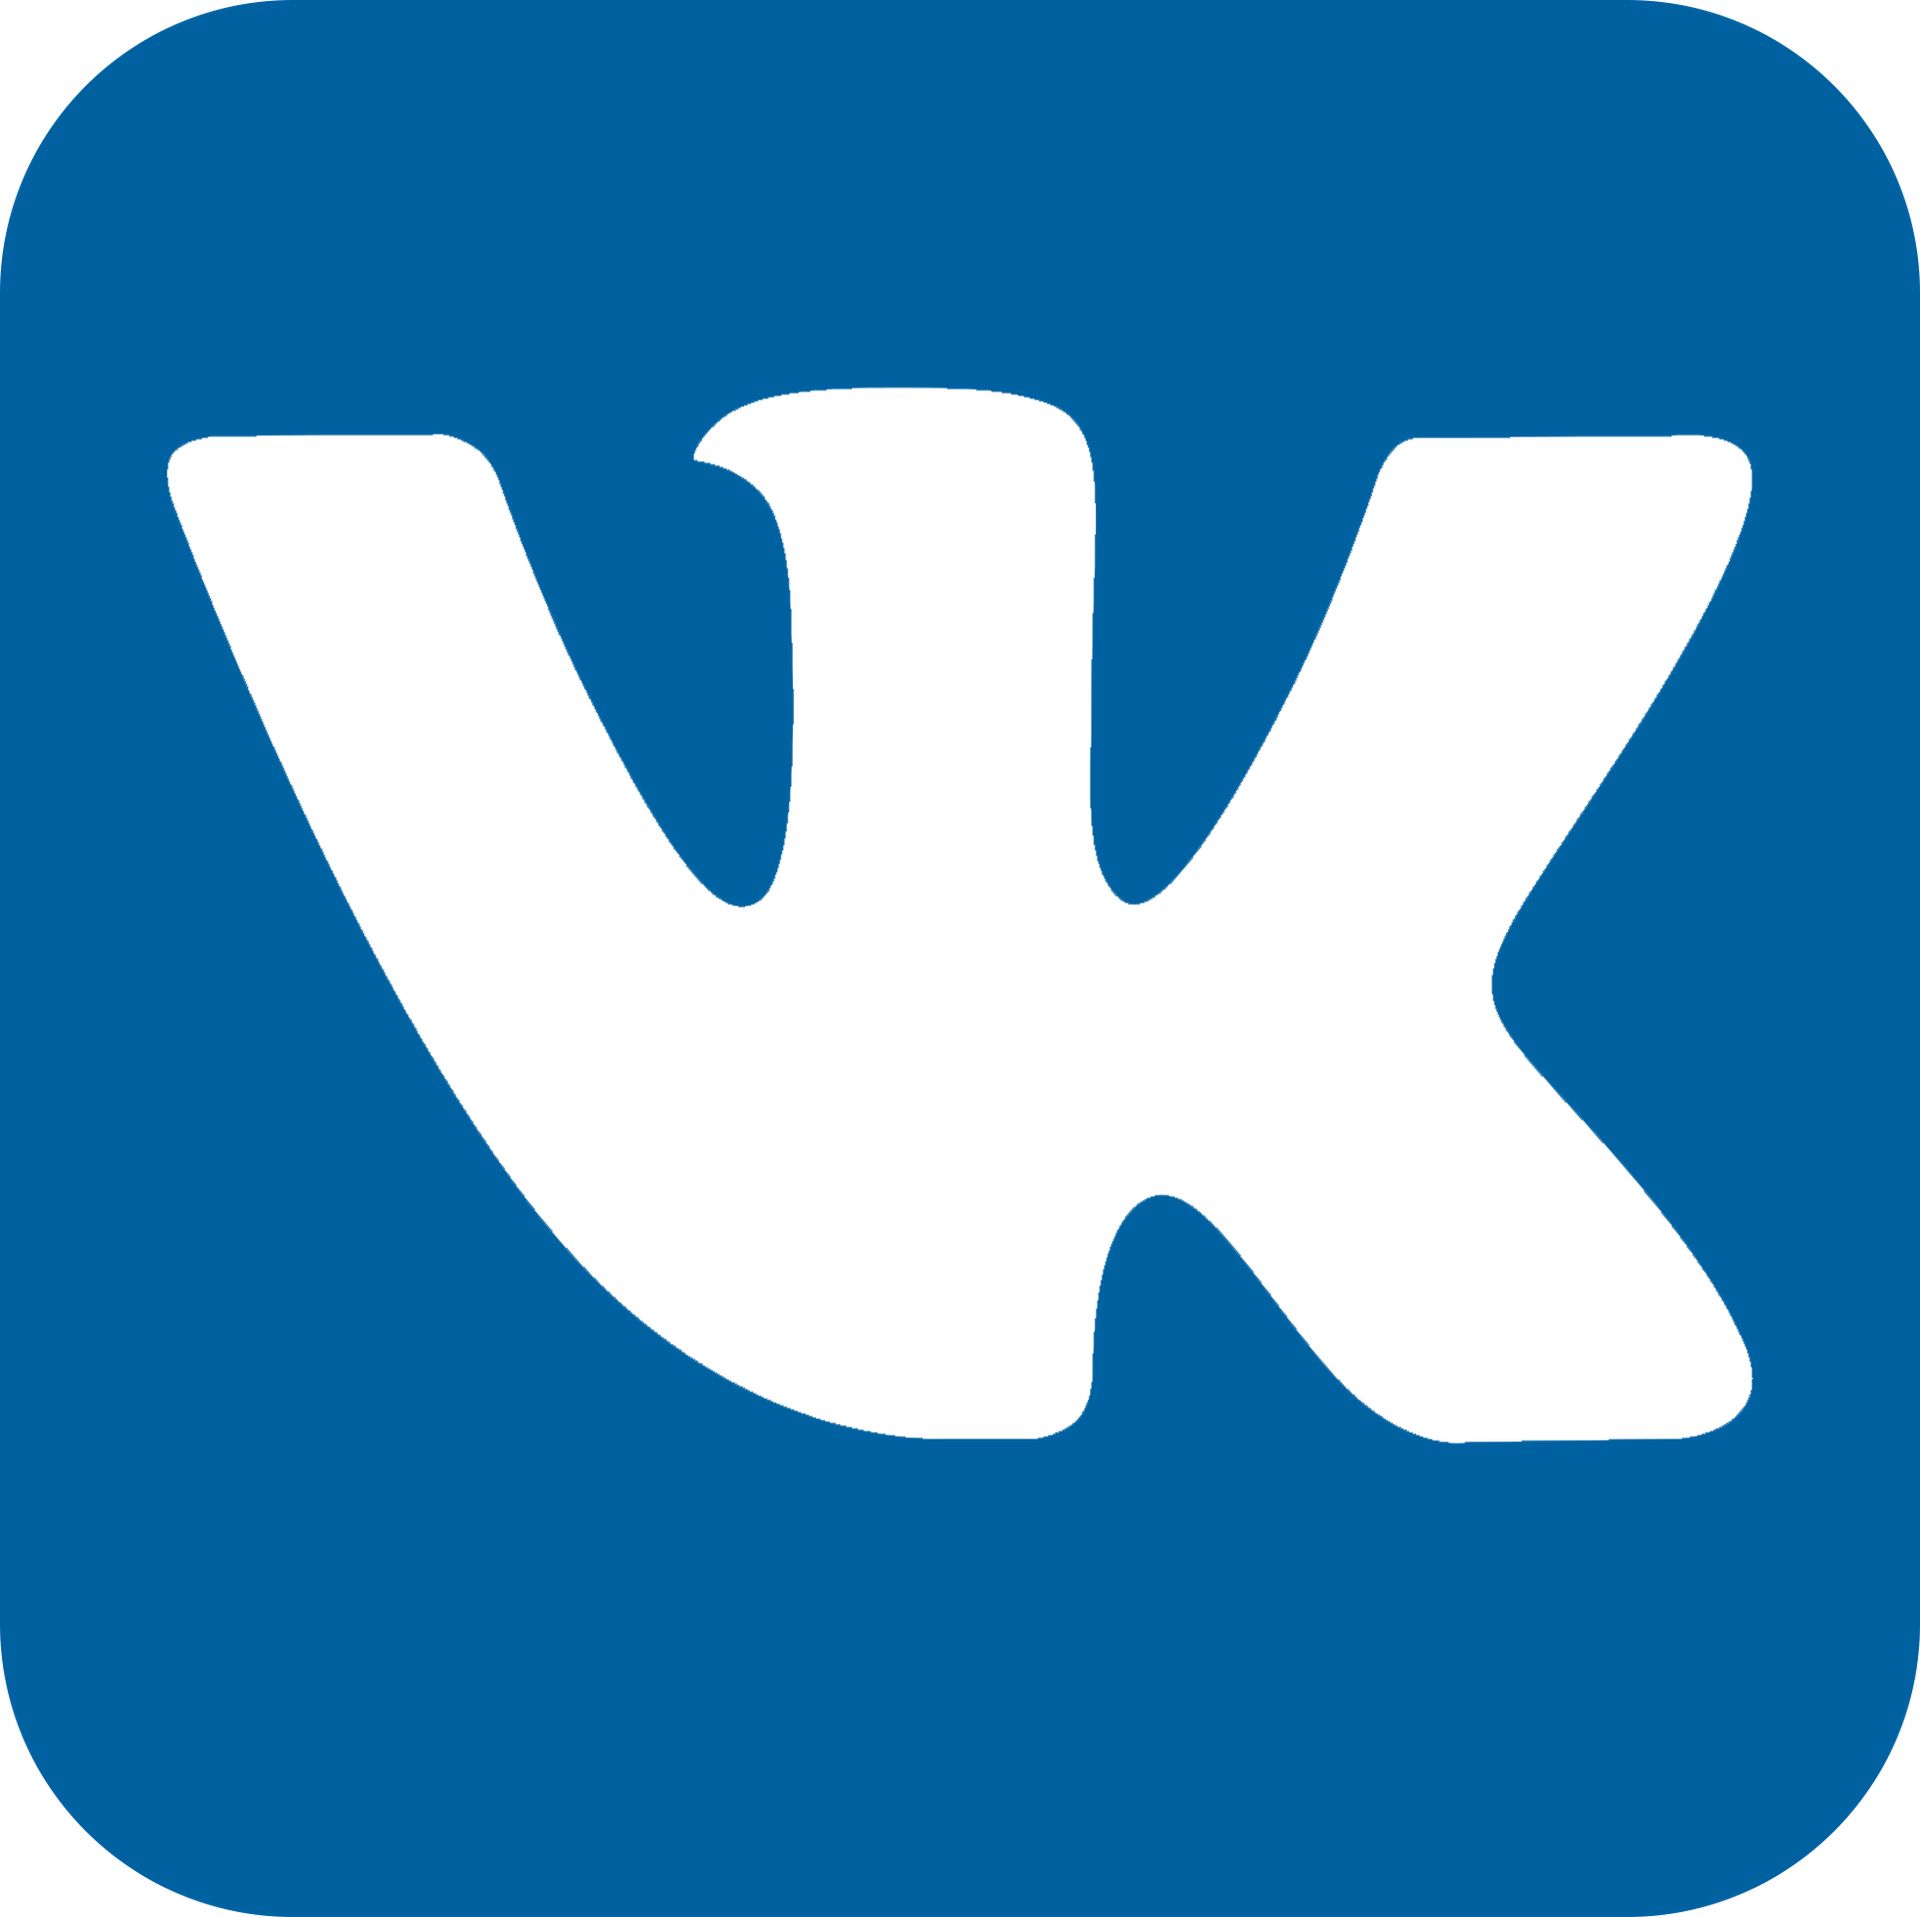 M v k com. ВК. Логотип ВК. Кнопка ВК. Значок ВК на белом фоне.